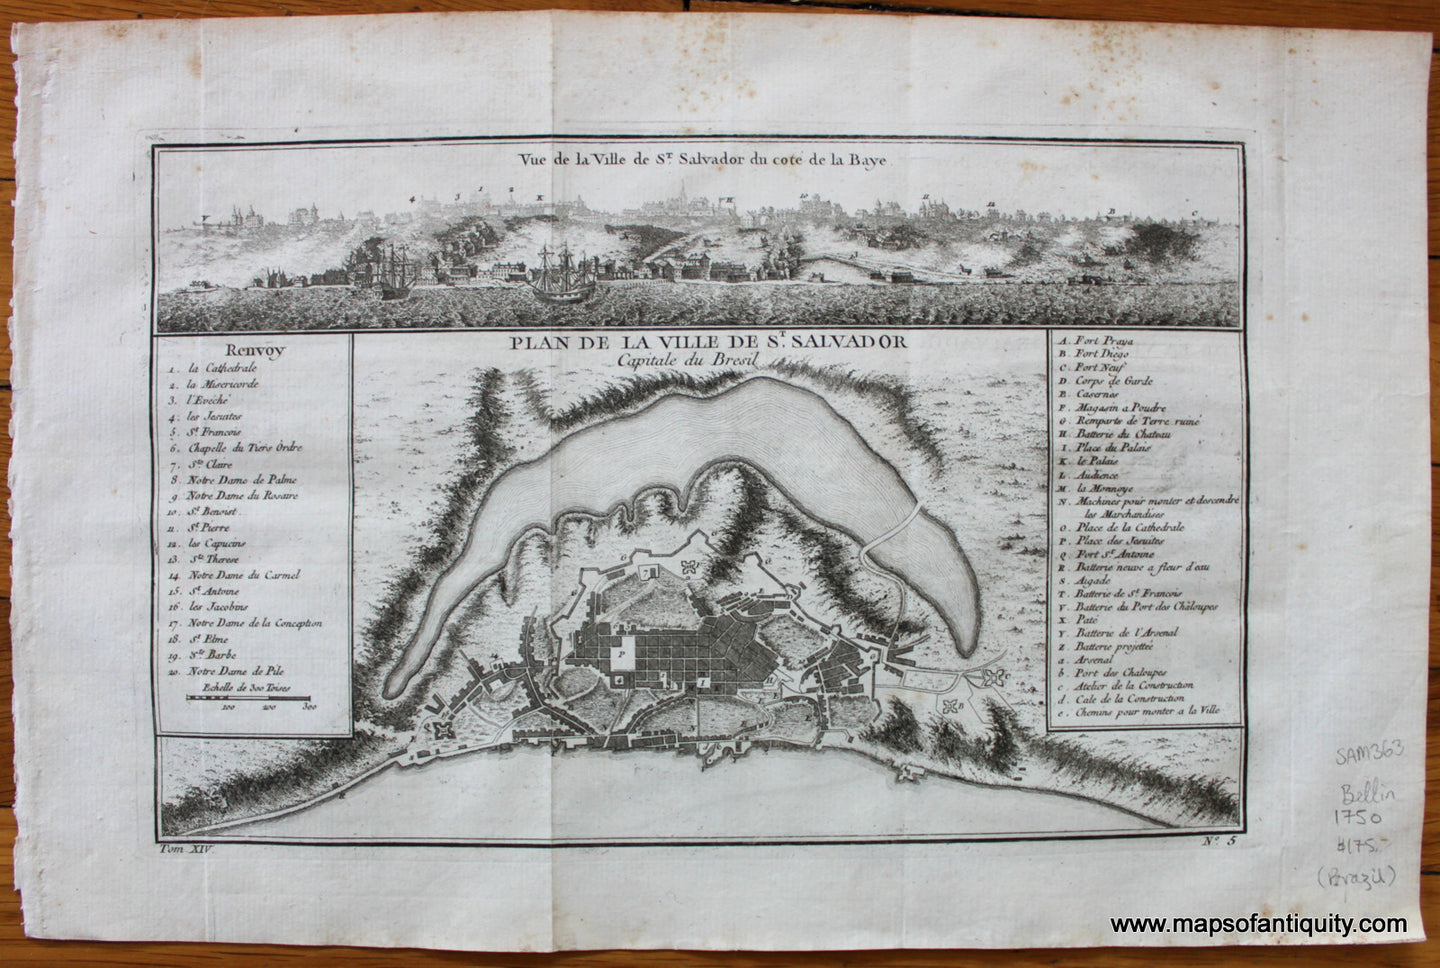 Antique-Map-French-Plan-de-la-Ville-de-St.-Salvador-Capitale-du-Bresil-Brazil-South-America-1750-1750s-Mid-1700s-18th-Century-Bellin-Maps-of-Antiquity